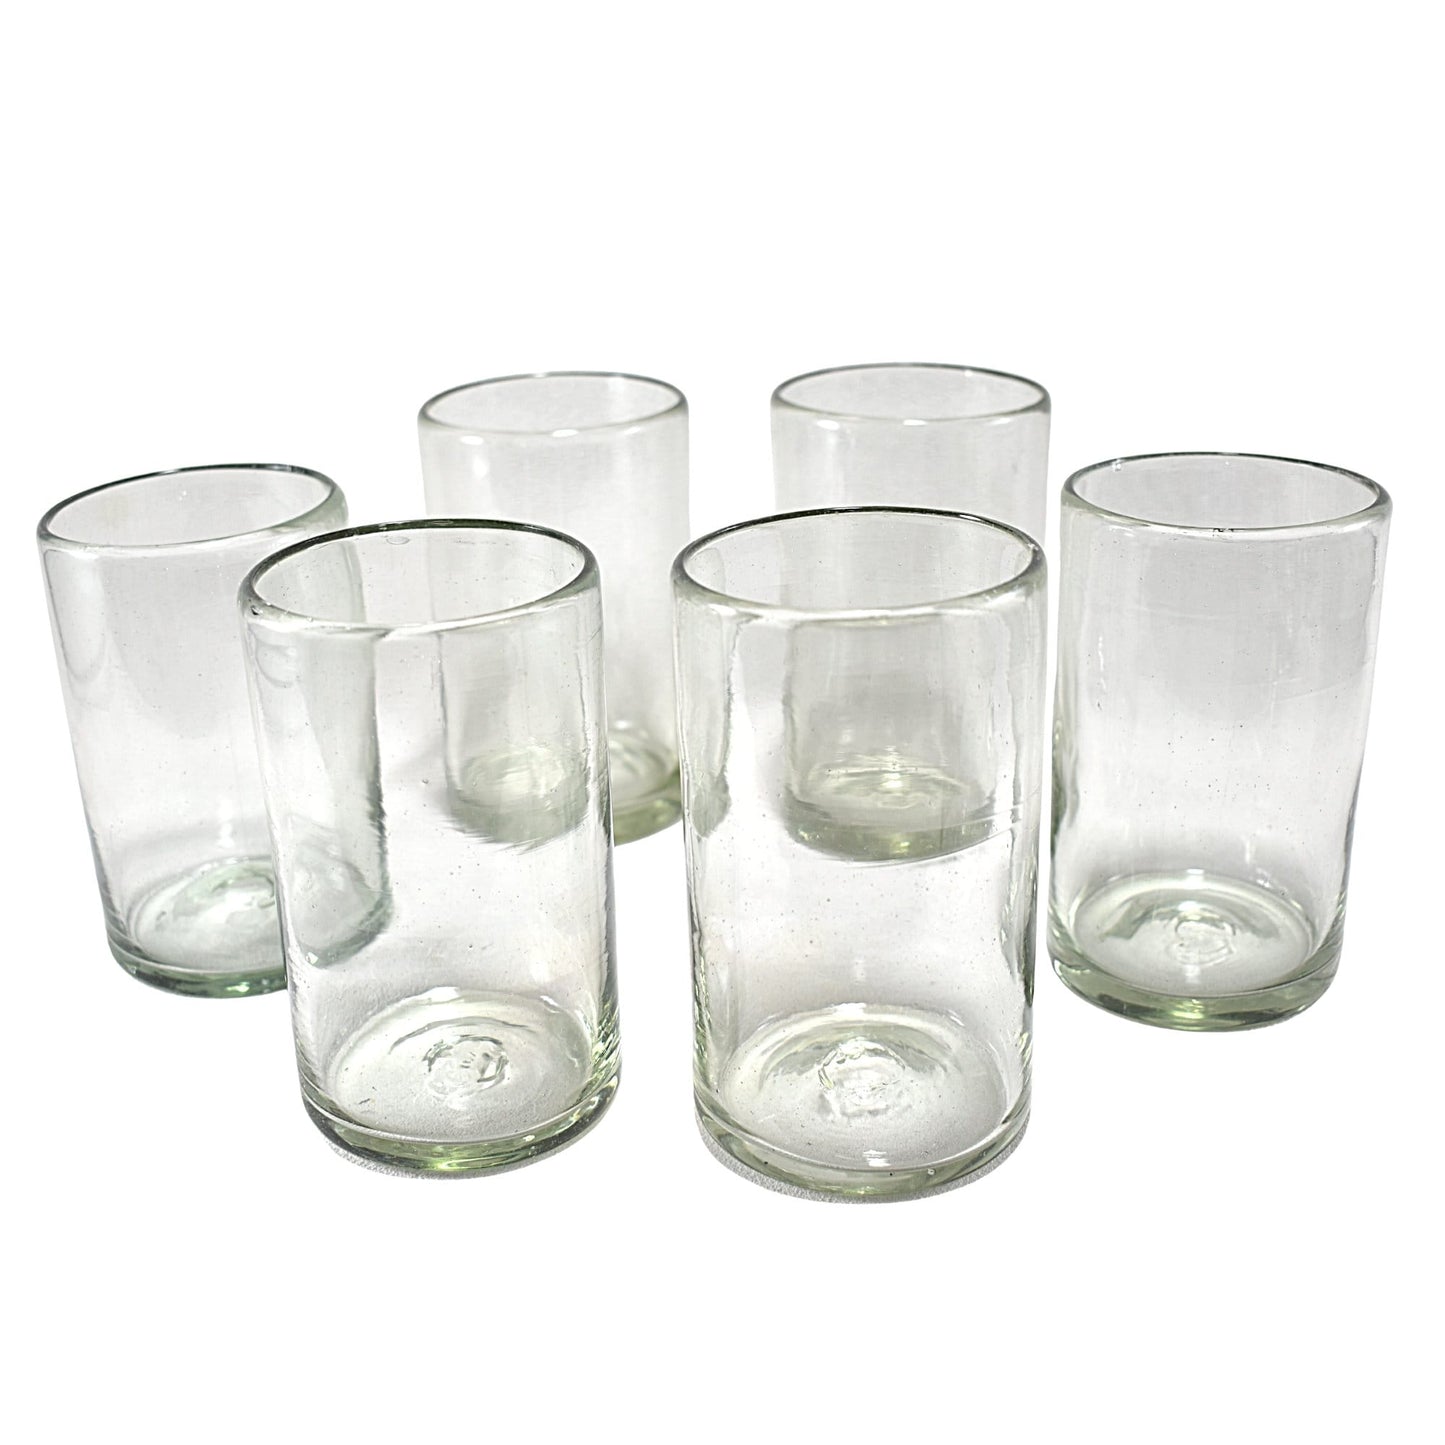 DRINK Set de vasos de agua de vidrio soplado By SkLO